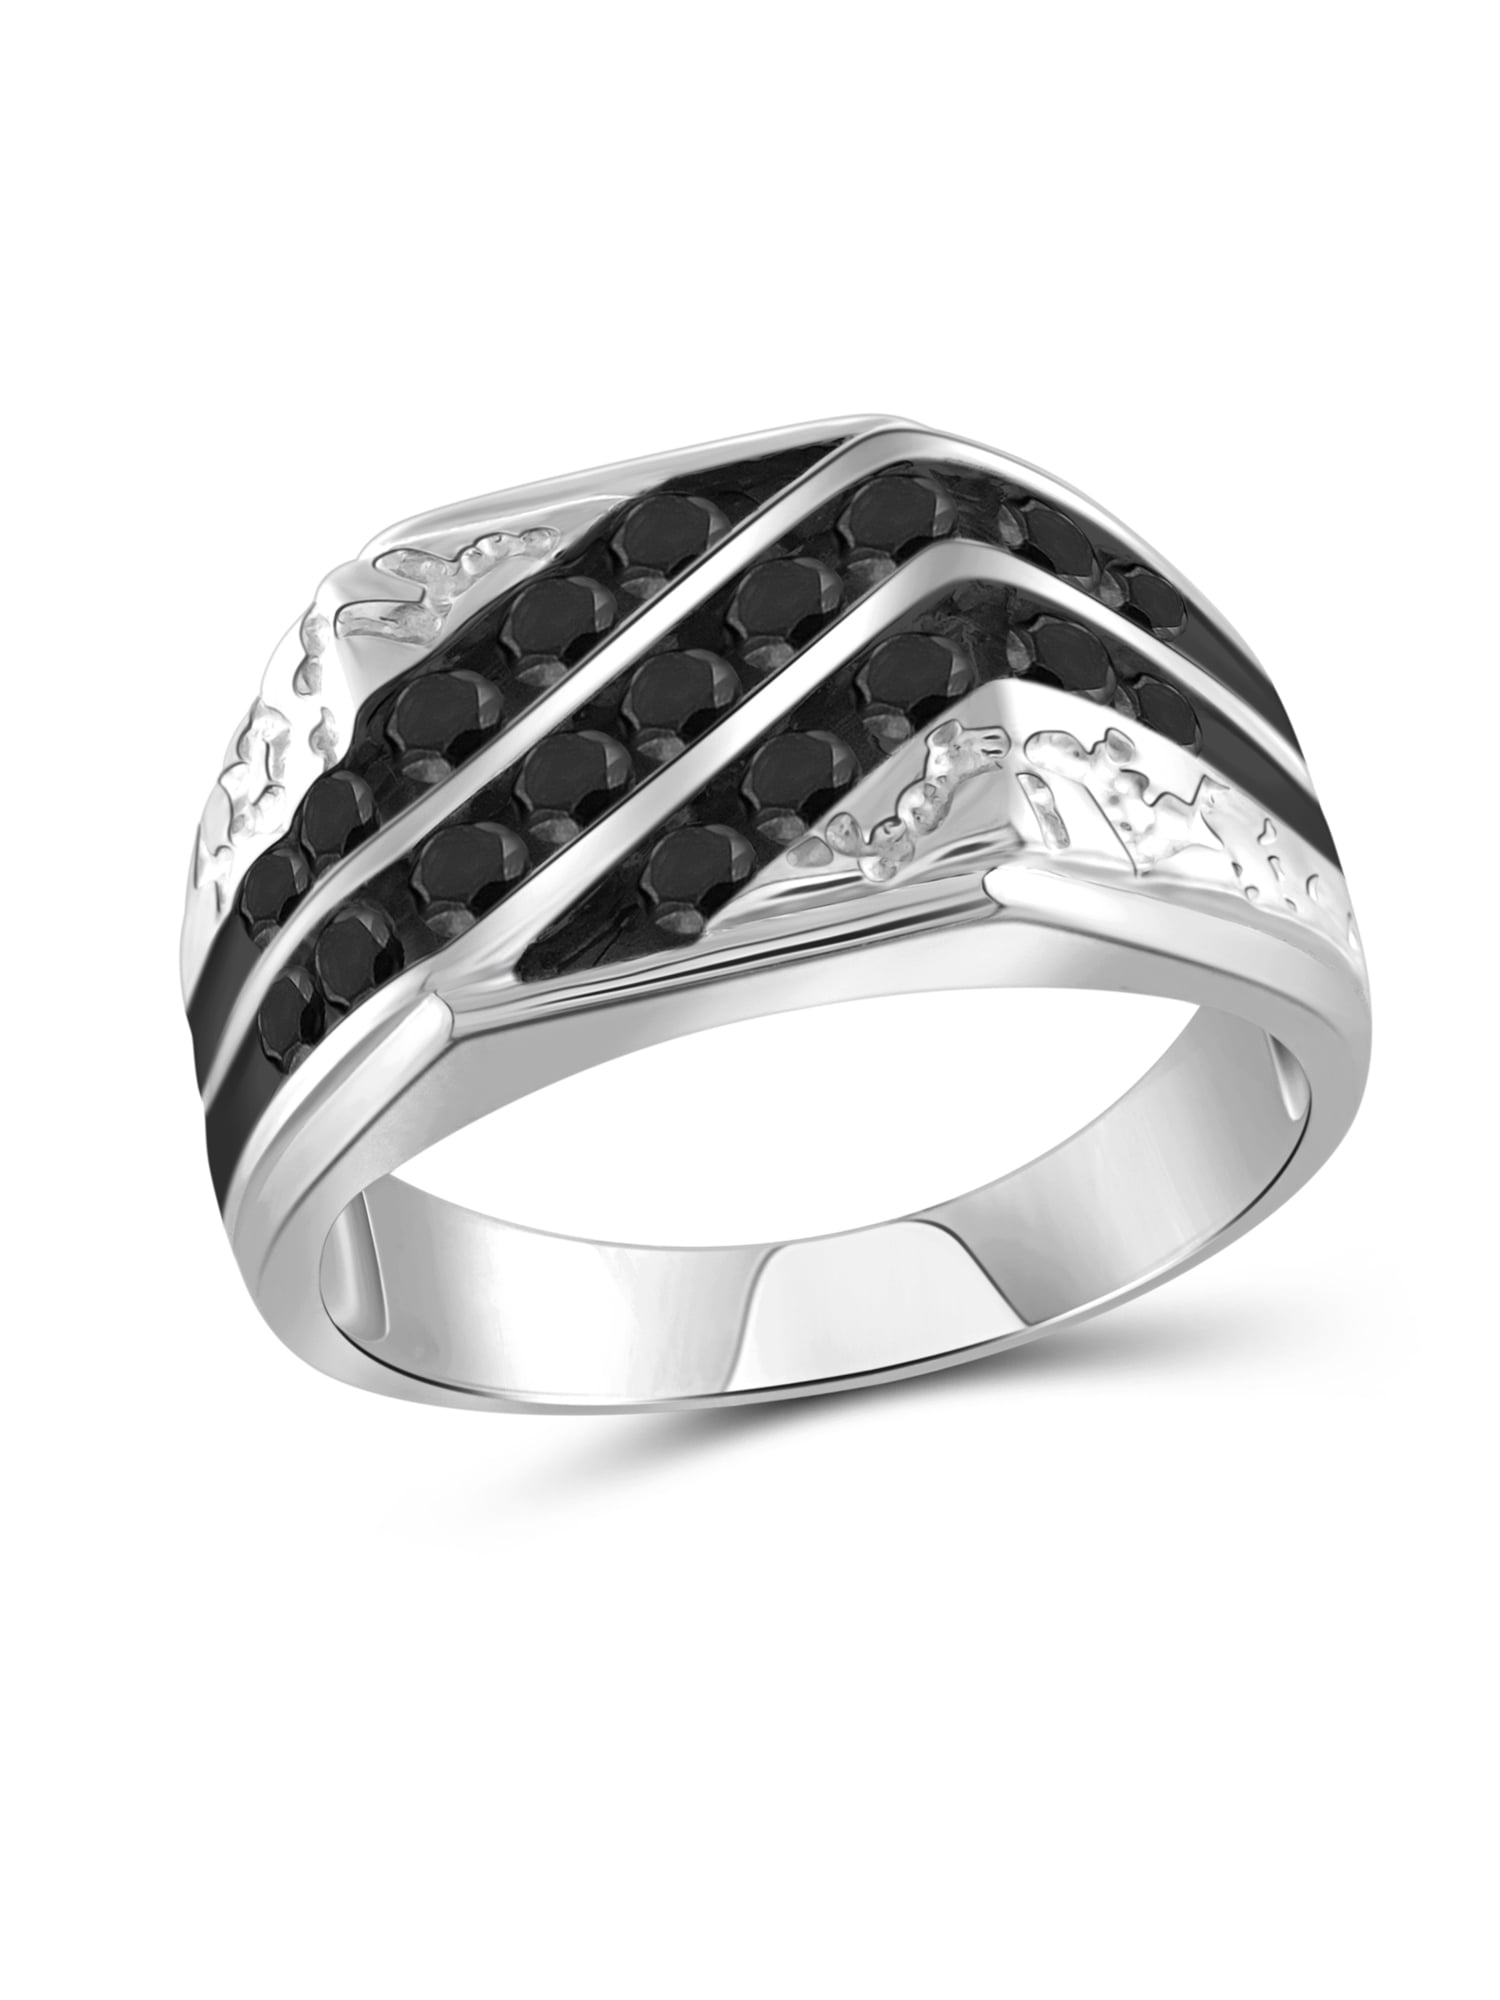 Buy Brilliant Diamond Ring For Men Online